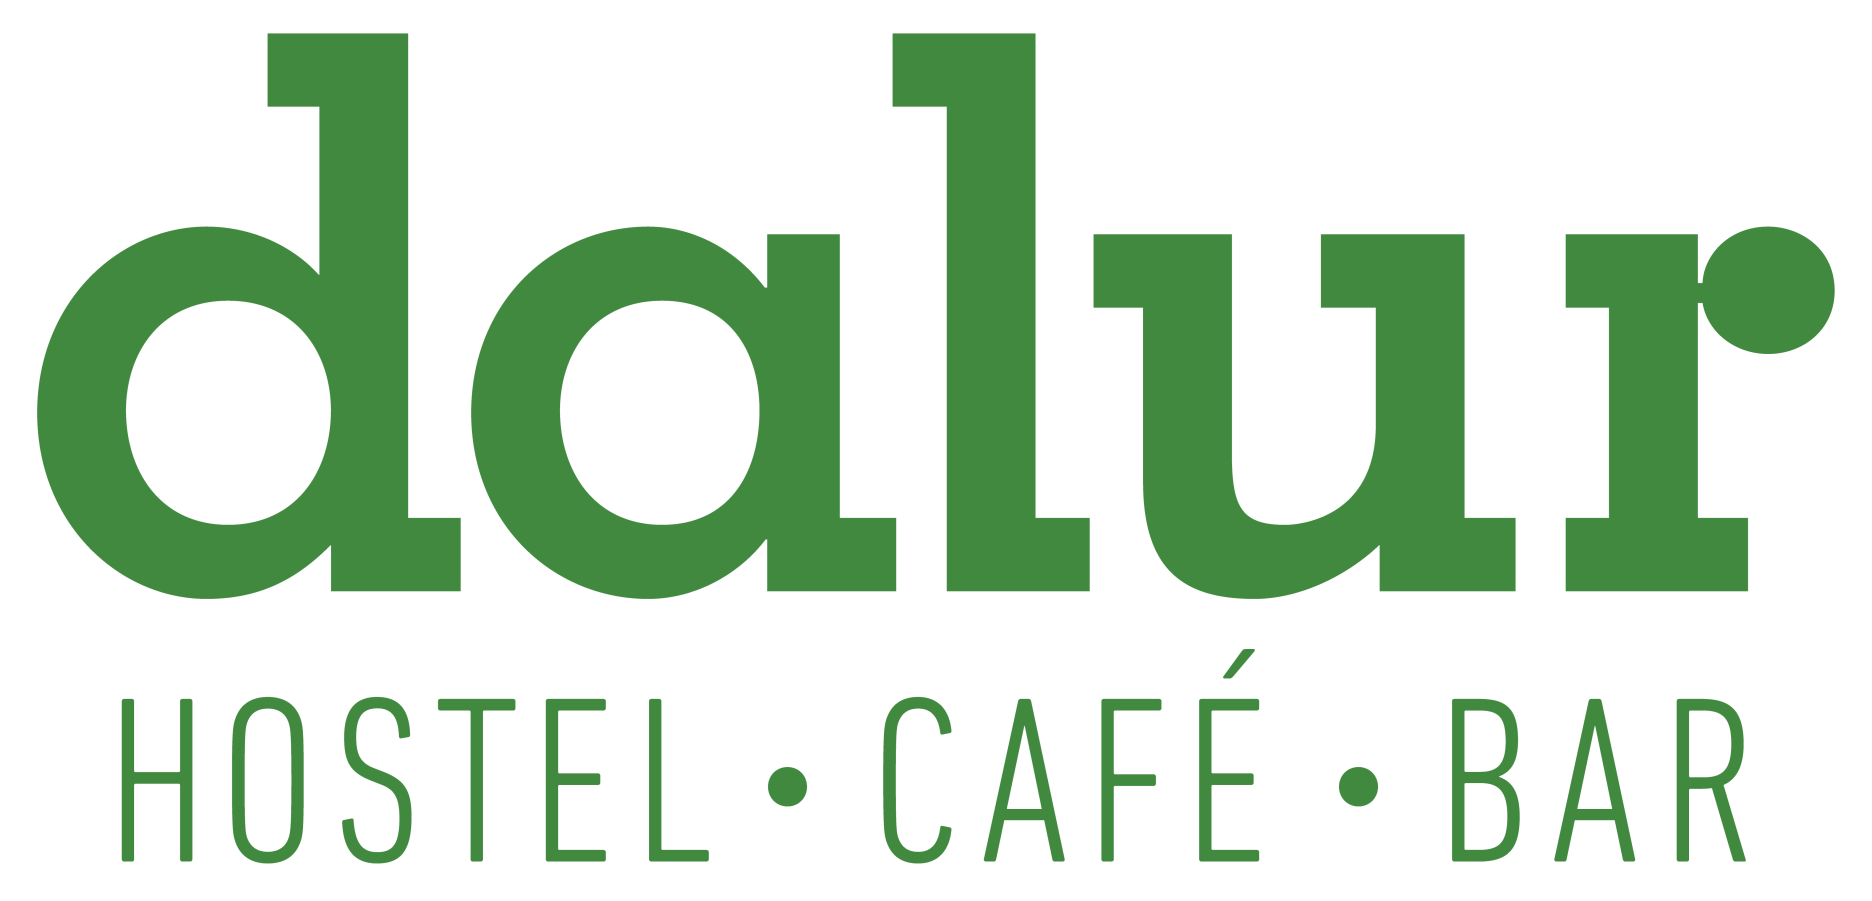 Café Dalur